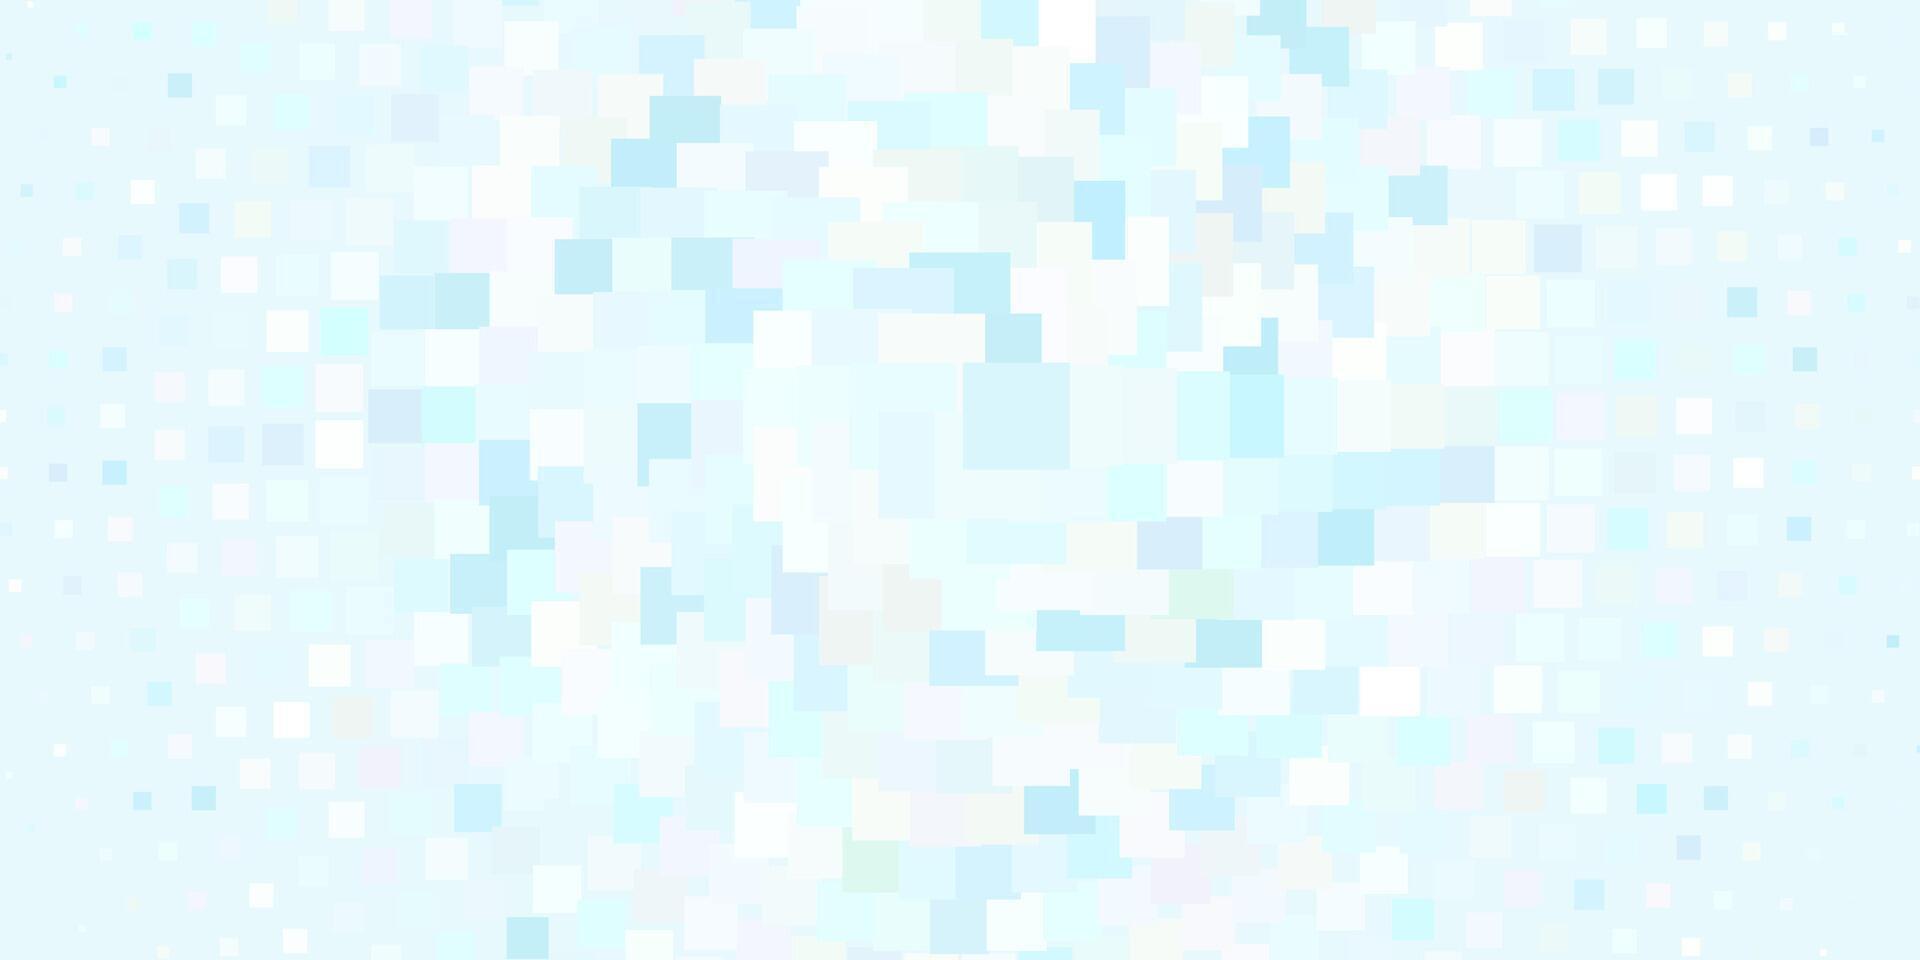 ljusblå layout med linjer, rektanglar. vektor